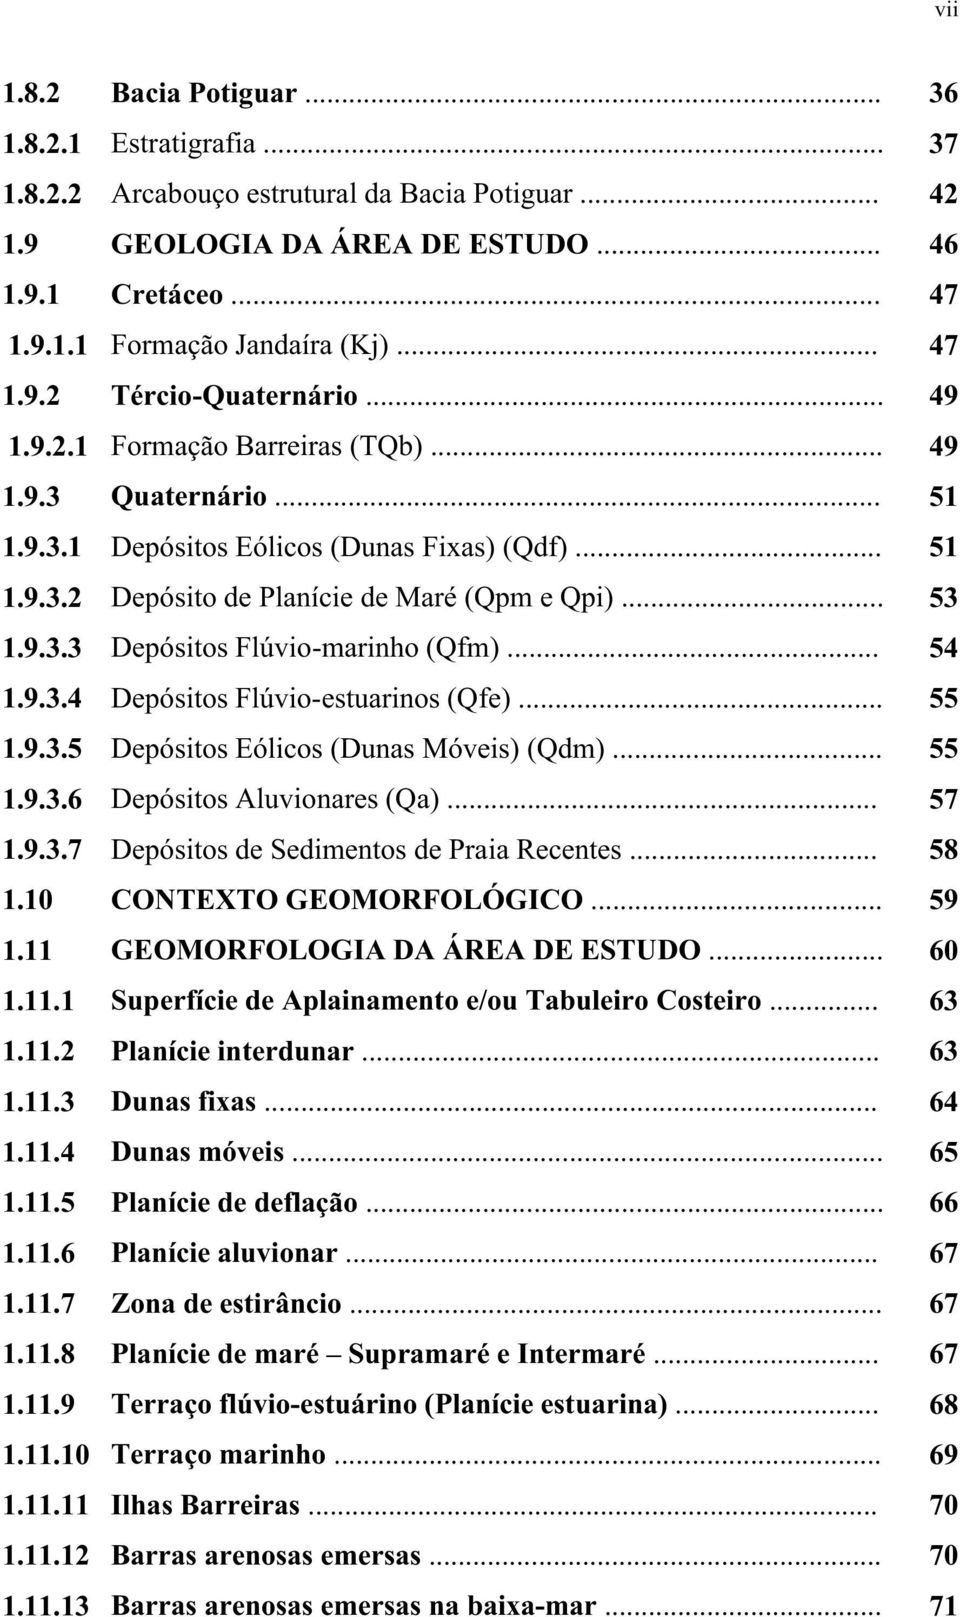 .. 53 1.9.3.3 Depósitos Flúvio-marinho (Qfm)... 54 1.9.3.4 Depósitos Flúvio-estuarinos (Qfe)... 55 1.9.3.5 Depósitos Eólicos (Dunas Móveis) (Qdm)... 55 1.9.3.6 Depósitos Aluvionares (Qa)... 57 1.9.3.7 Depósitos de Sedimentos de Praia Recentes.